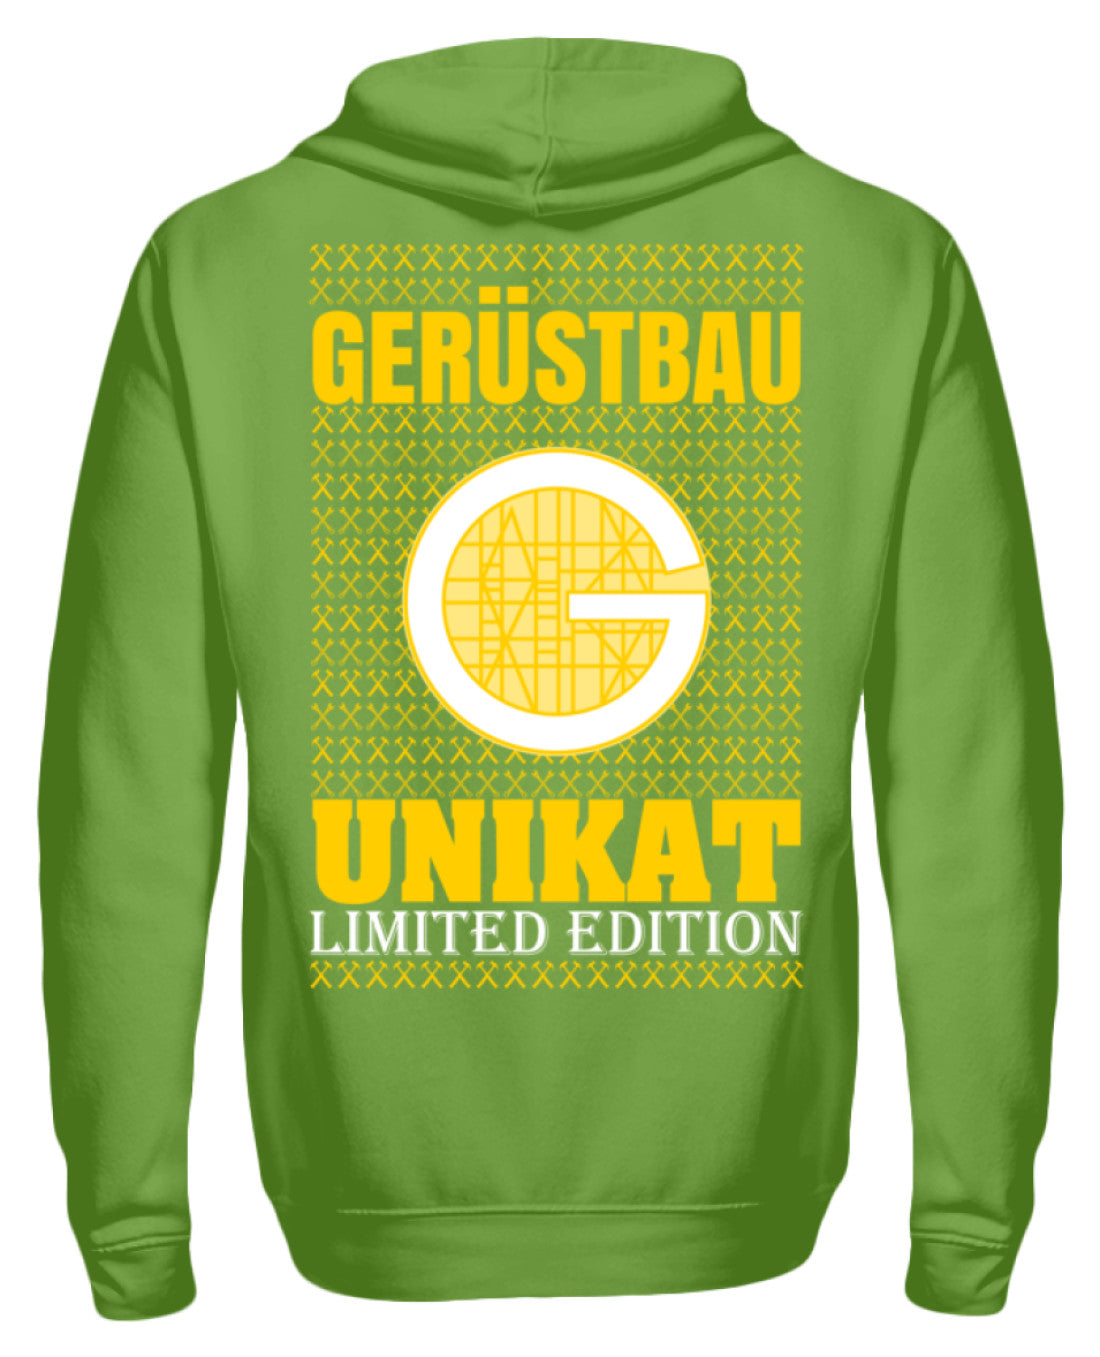 Gerüstbauer Unikat  - Unisex Kapuzenpullover Hoodie €39.95 Gerüstbauer - Shop >>